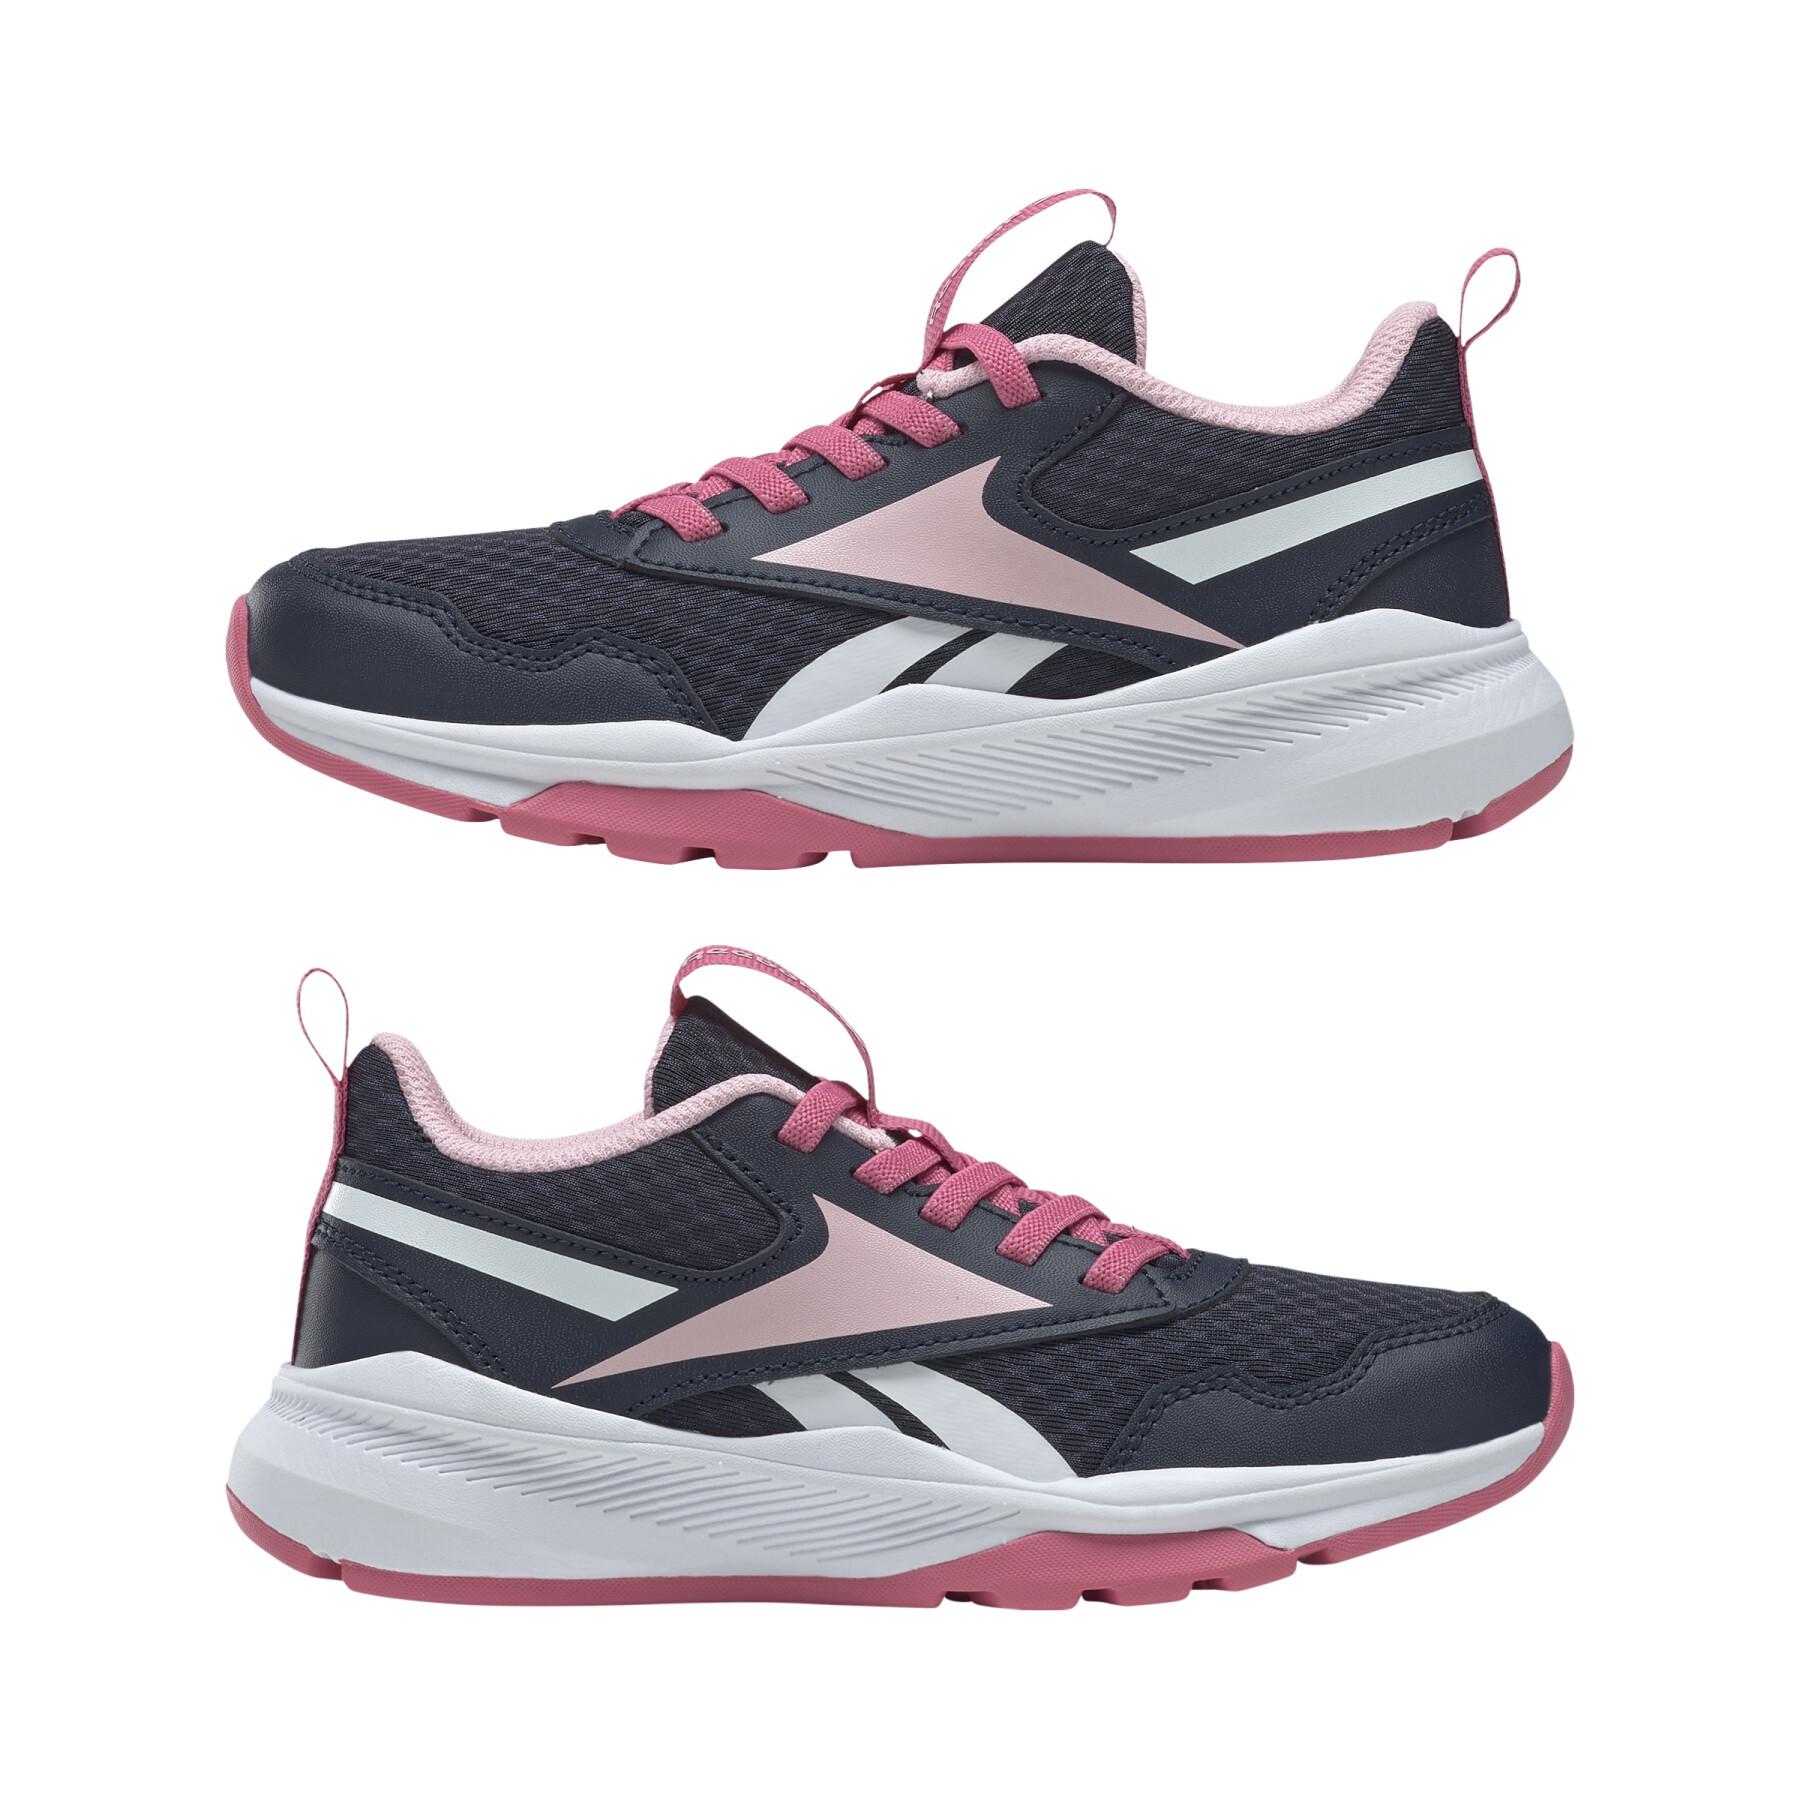 Sportschoenen voor meisjes Reebok Xt Sprinter 2